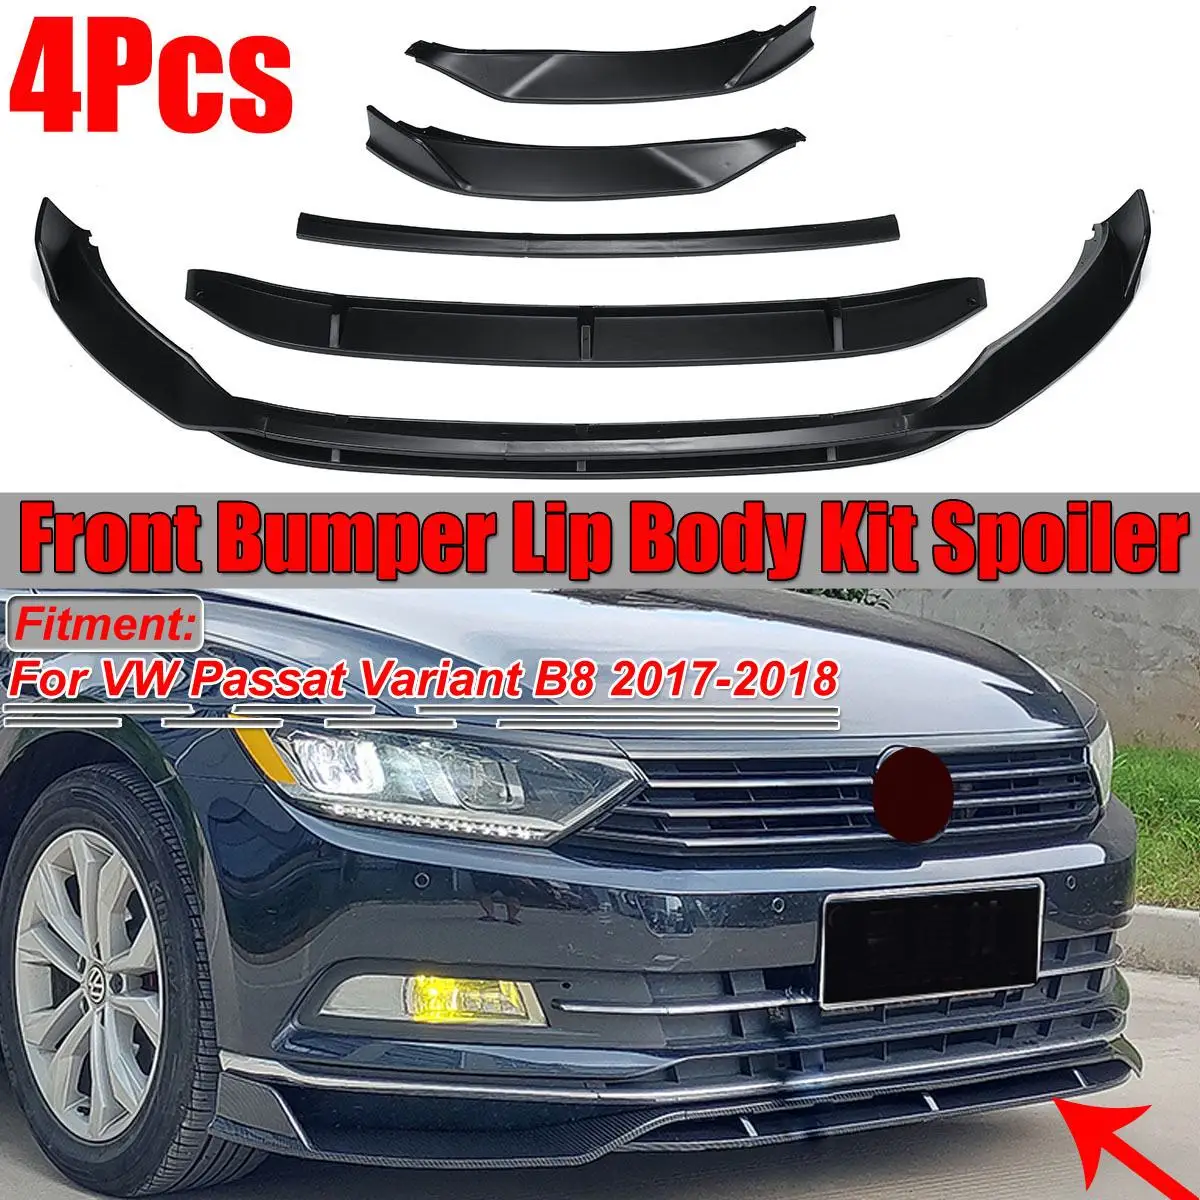 

4Pcs Carbon Fiber Look / Black Car Front Bumper Splitter Lip Spoiler Diffuser Cover Protector For VW Passat Variant B8 2017-2018